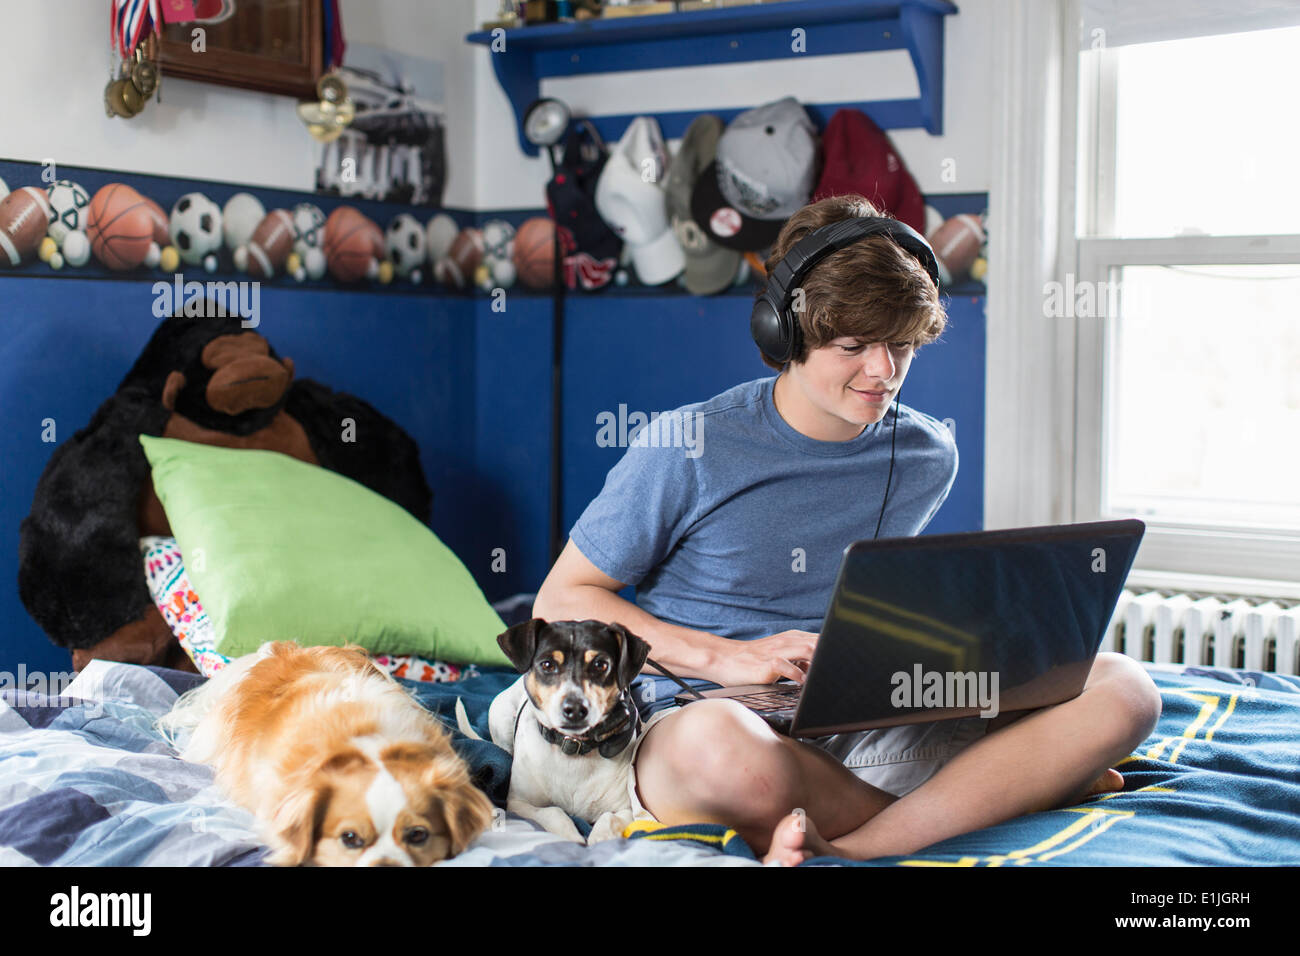 Adolescente sentada en la cama con ordenador portátil, con perros Foto de stock